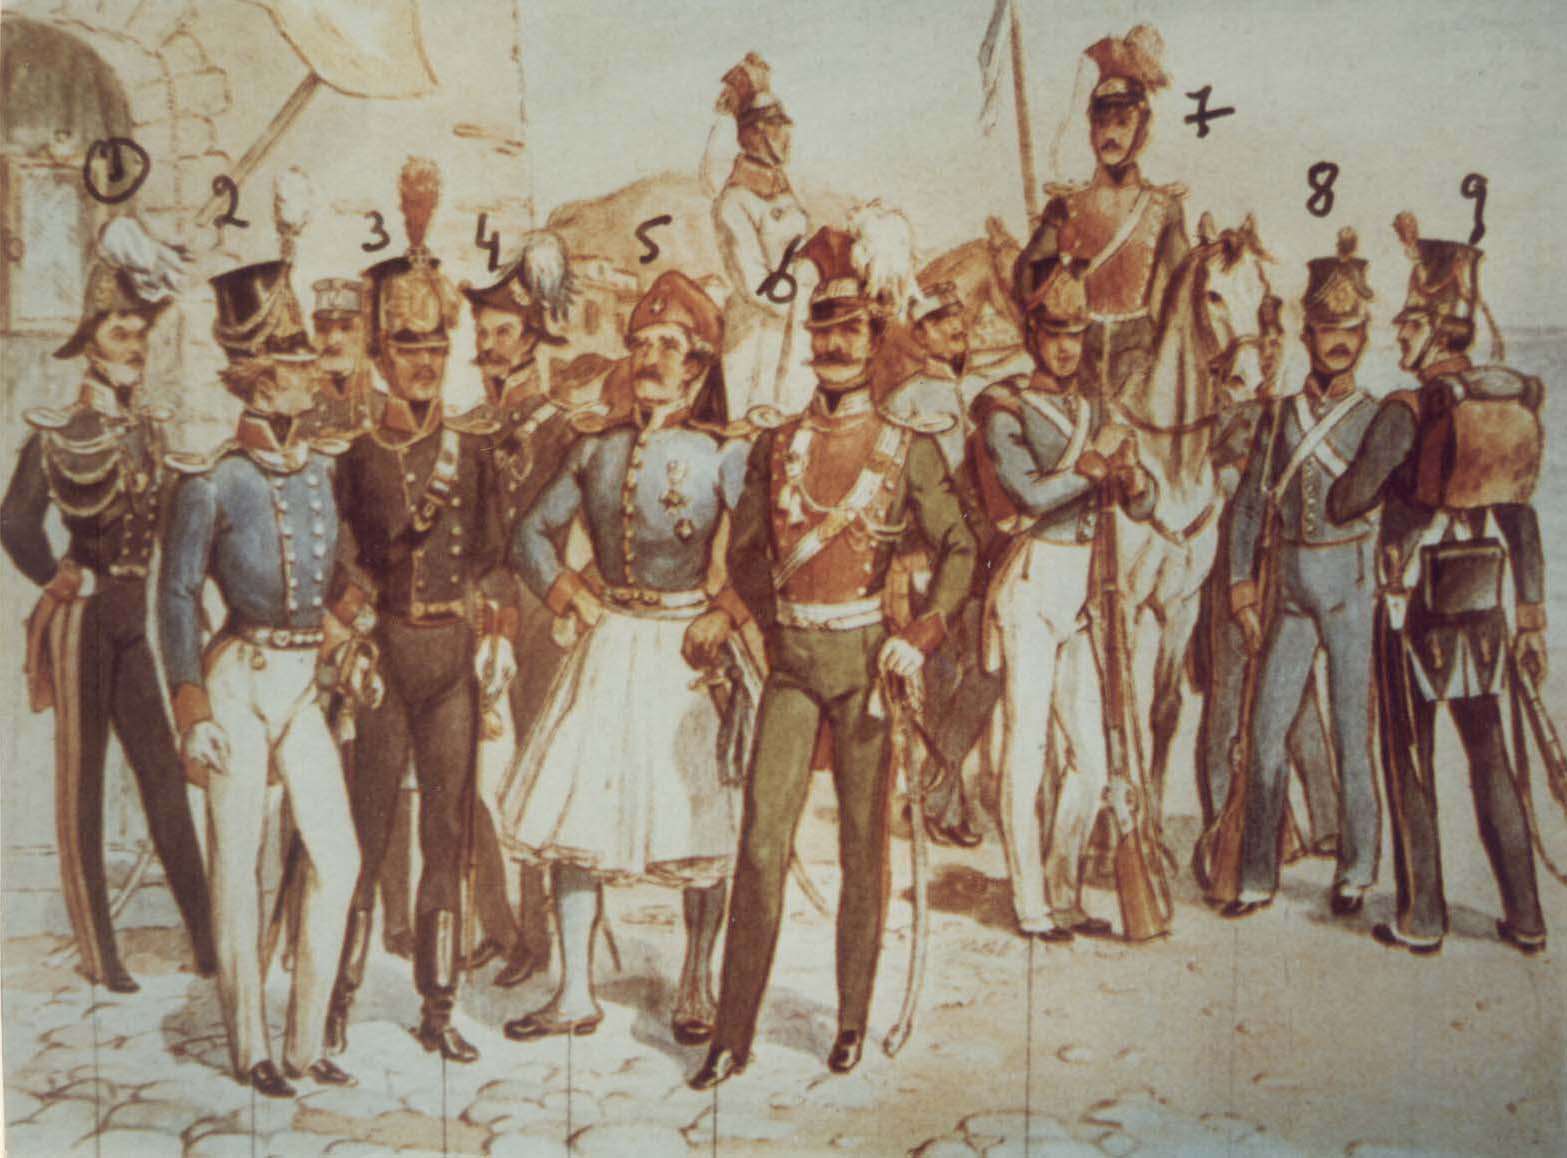 1η Απριλίου σαν σήμερα το 1822, νόμος για σύσταση ελληνικού στρατού με αρχηγό Γερμανό!